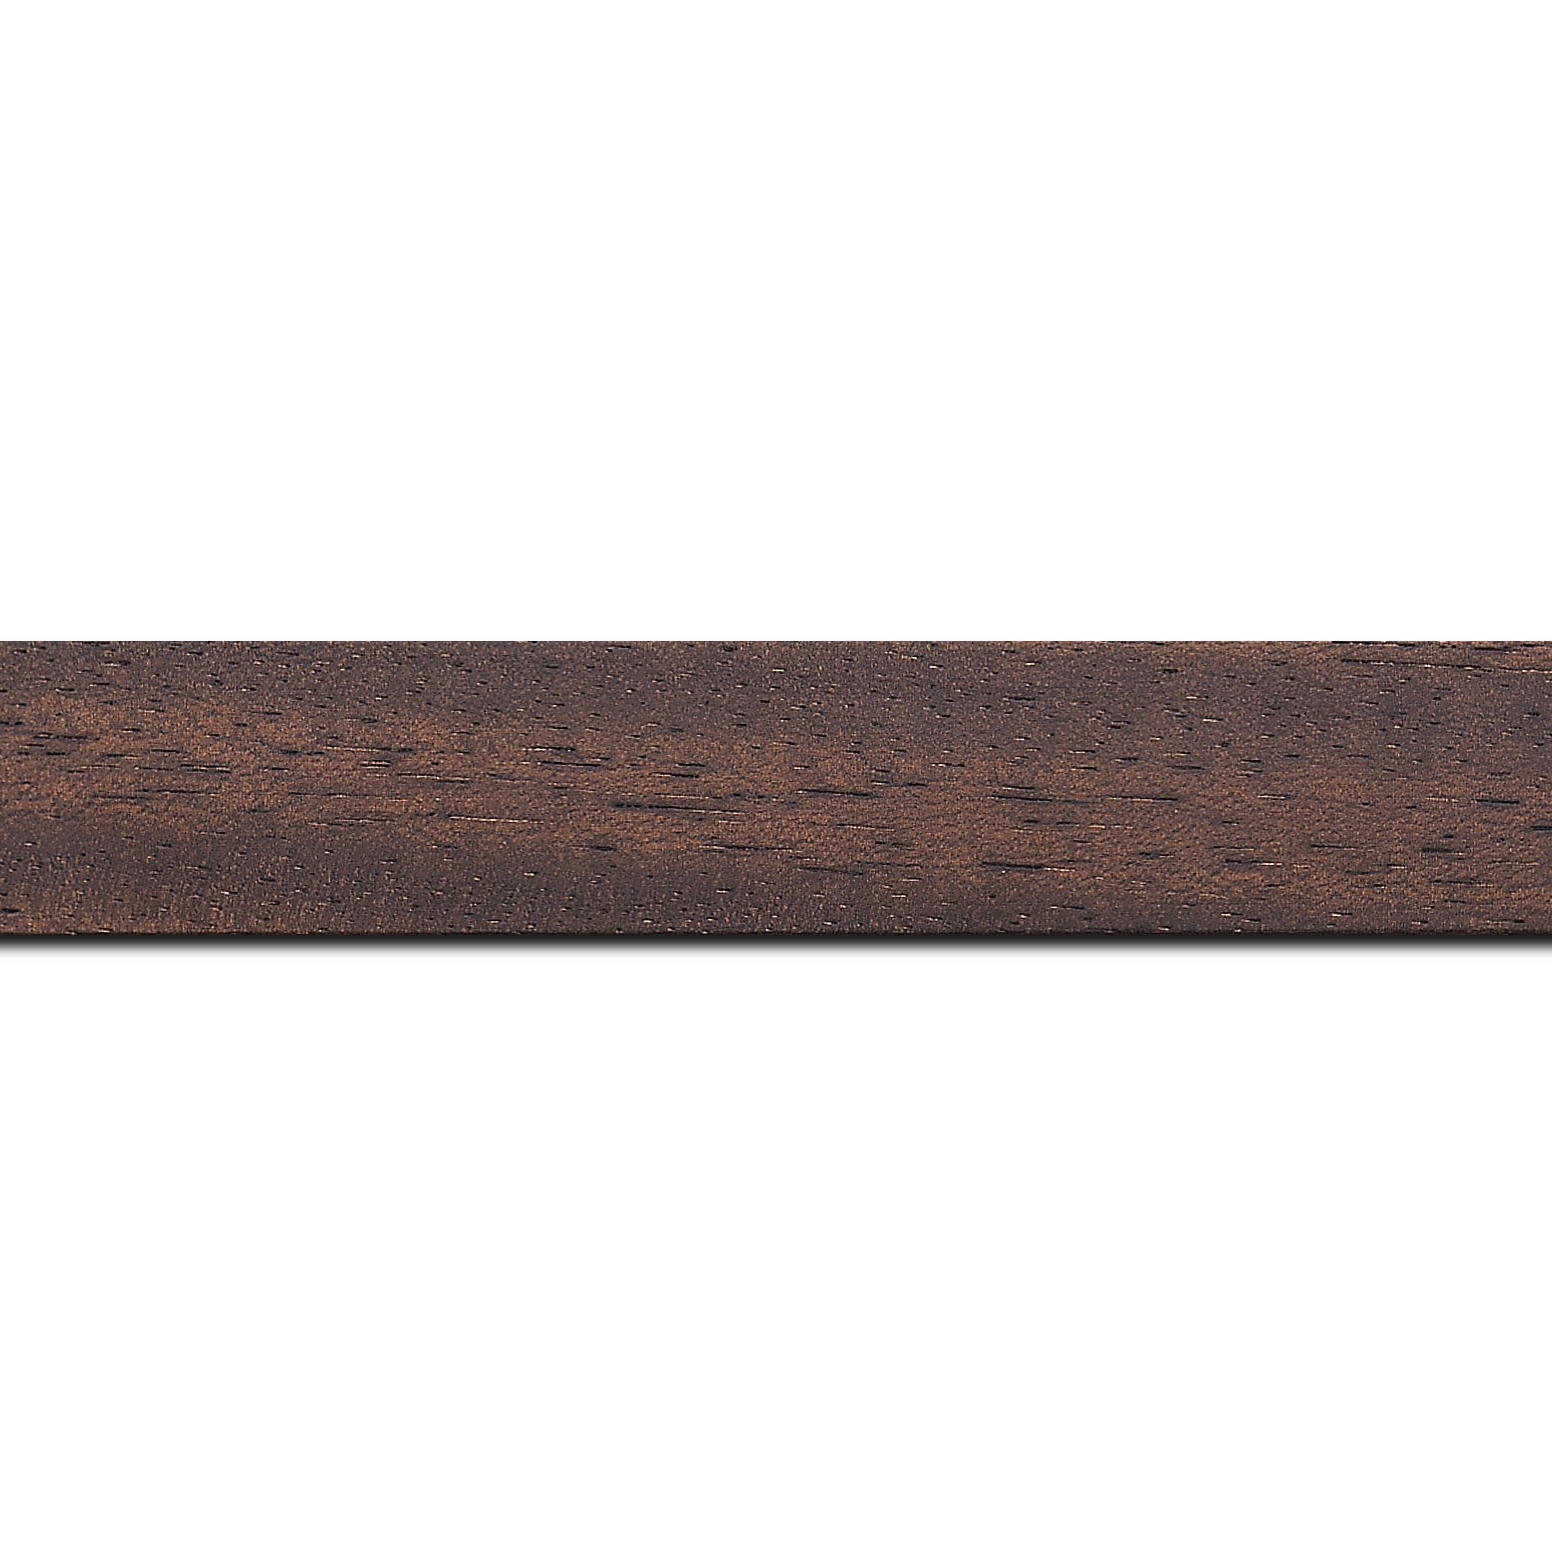 Pack par 12m, bois profil plat largeur 3cm couleur marron foncé satiné (longueur baguette pouvant varier entre 2.40m et 3m selon arrivage des bois)